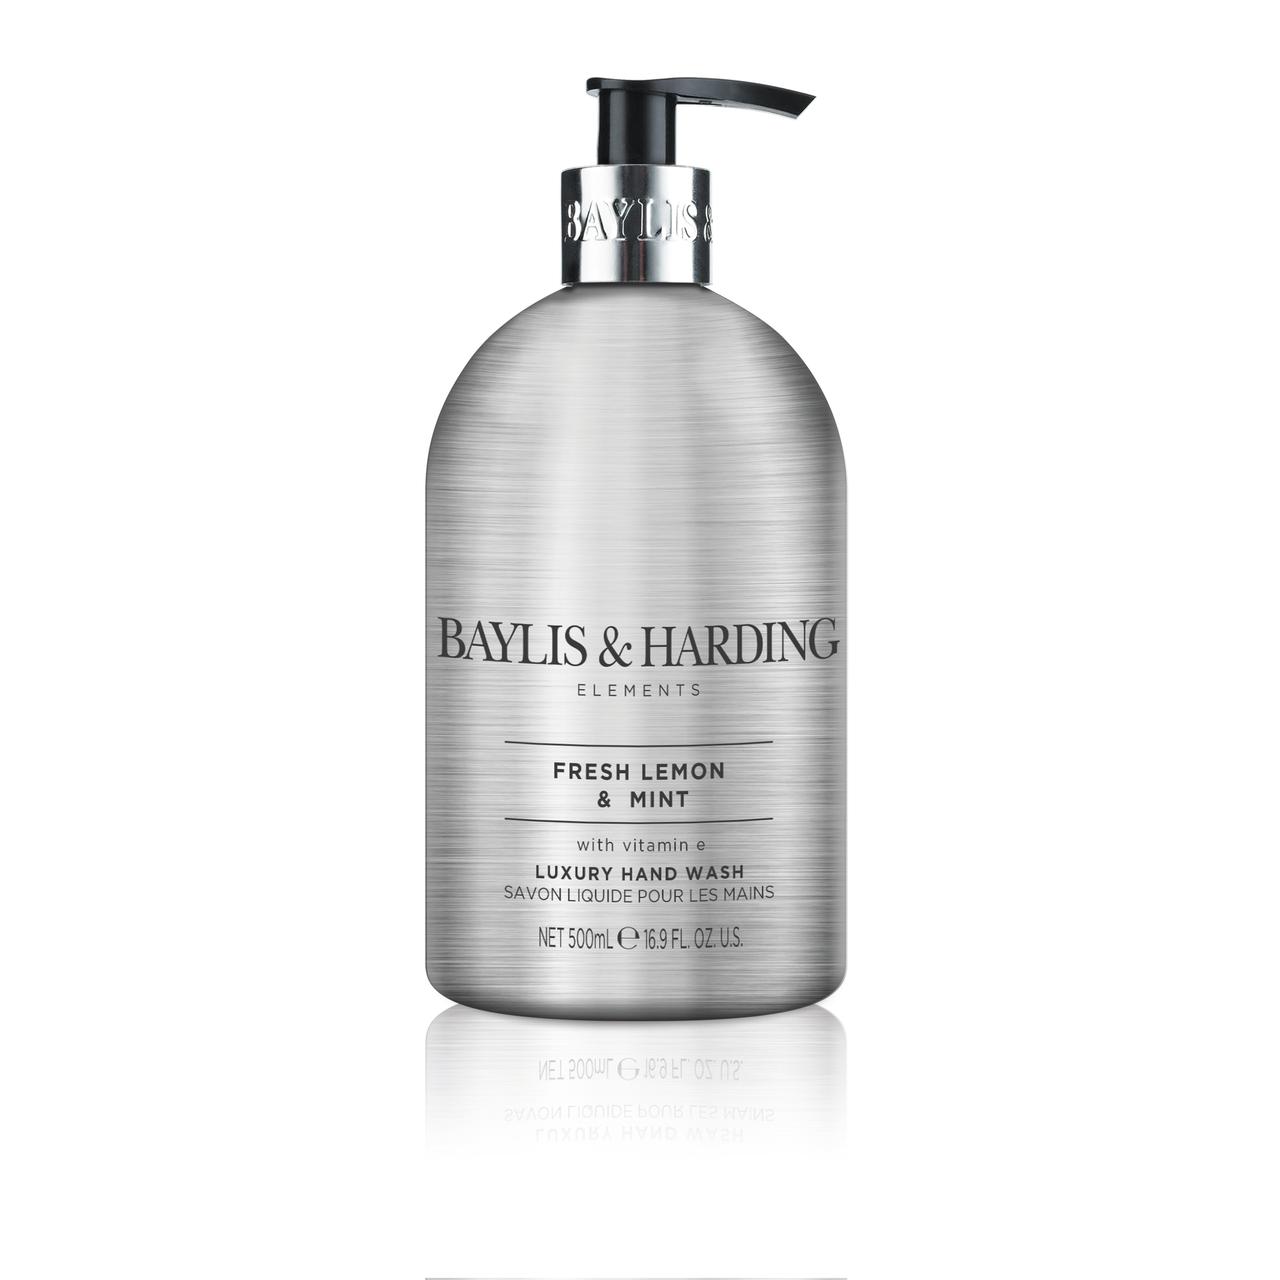 Baylis and Harding Elements 500ml Hand Soap, Lemon & Mint - image 1 of 7